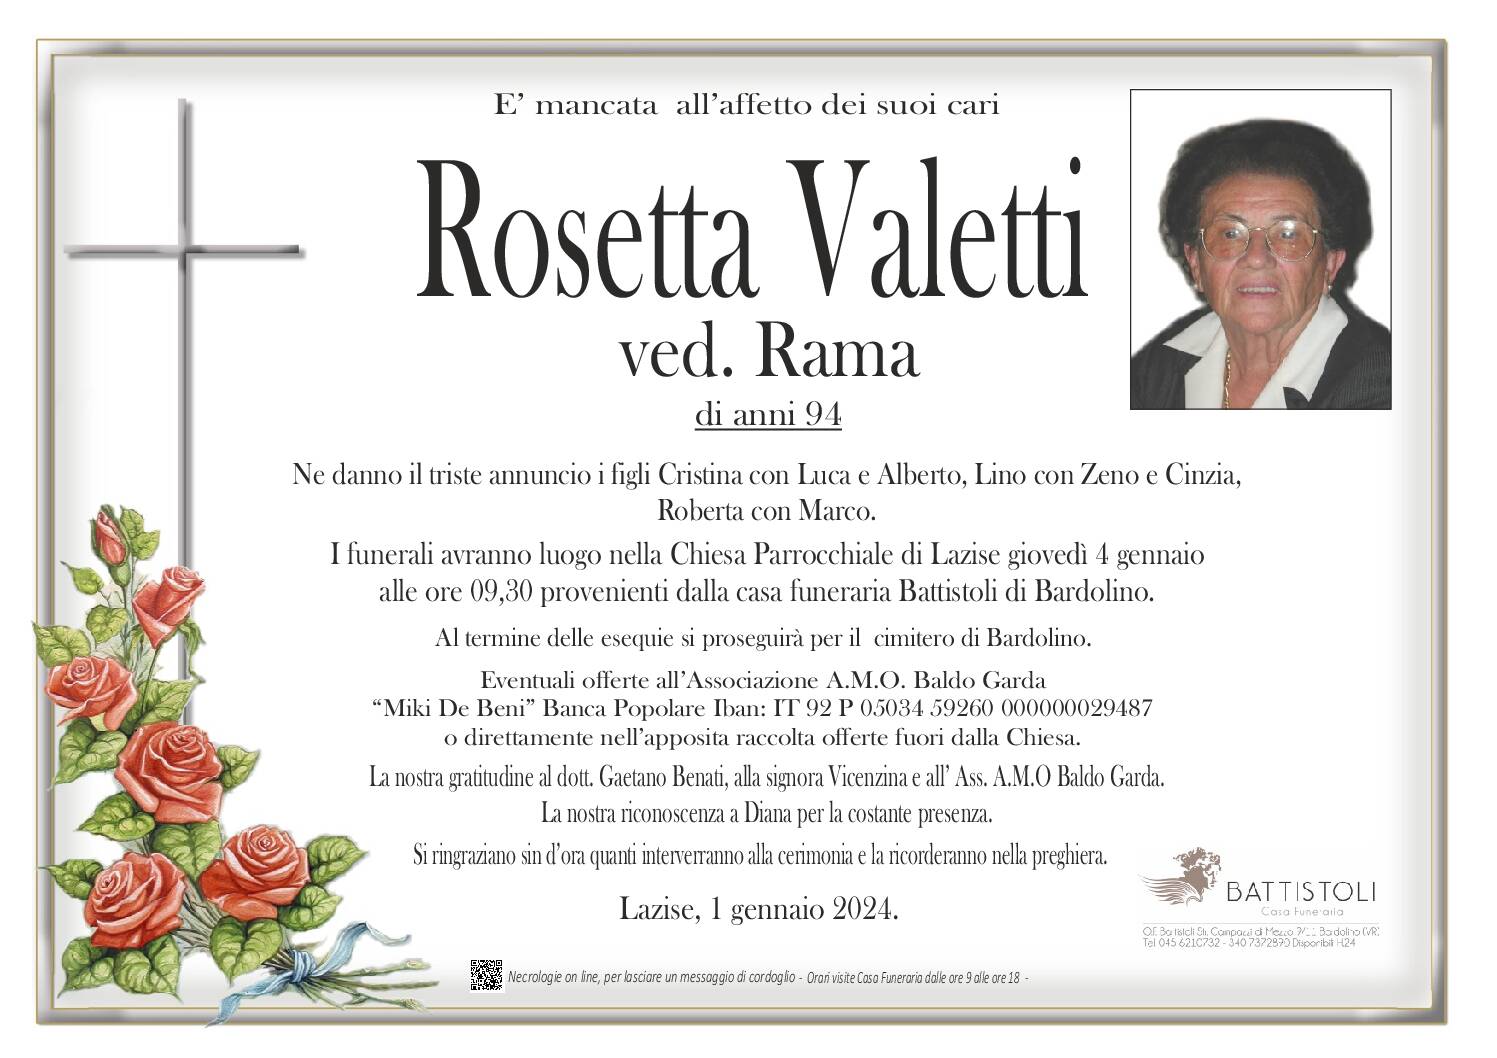 Valetti Rosetta